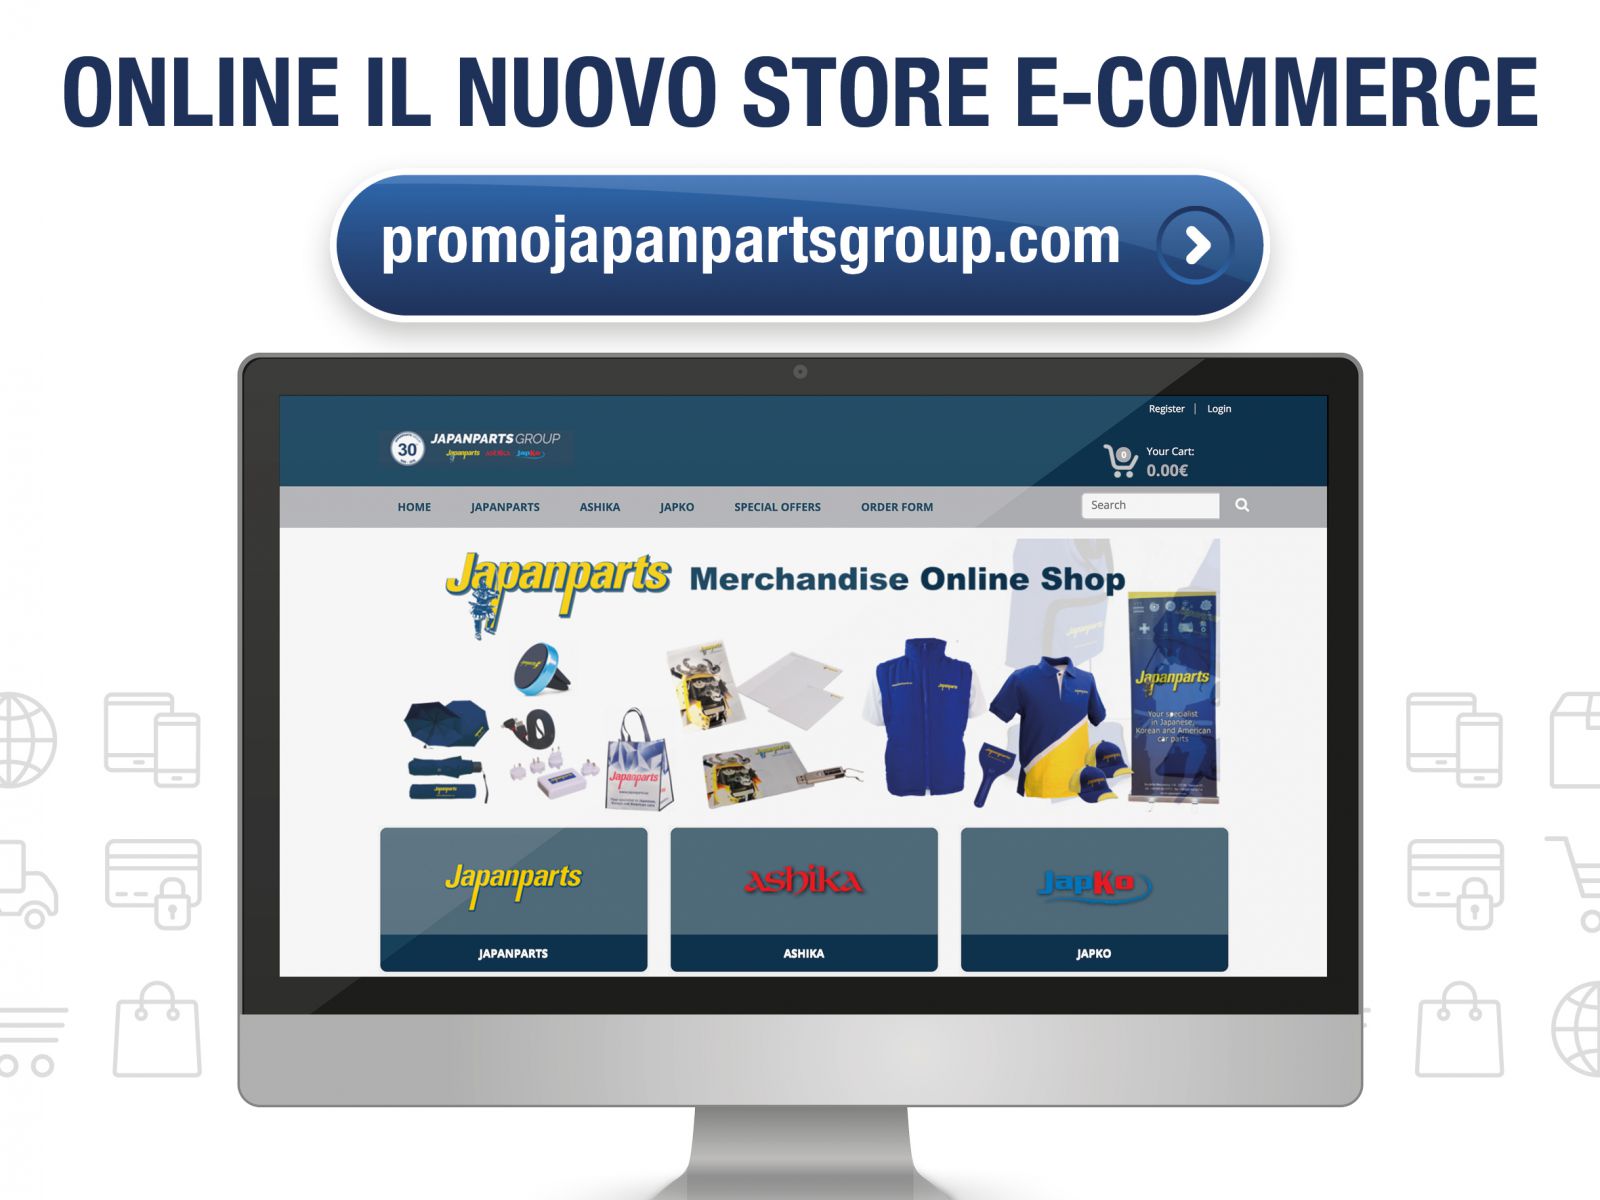 Japanparts lancia il nuovo e-commerce per il merchandising